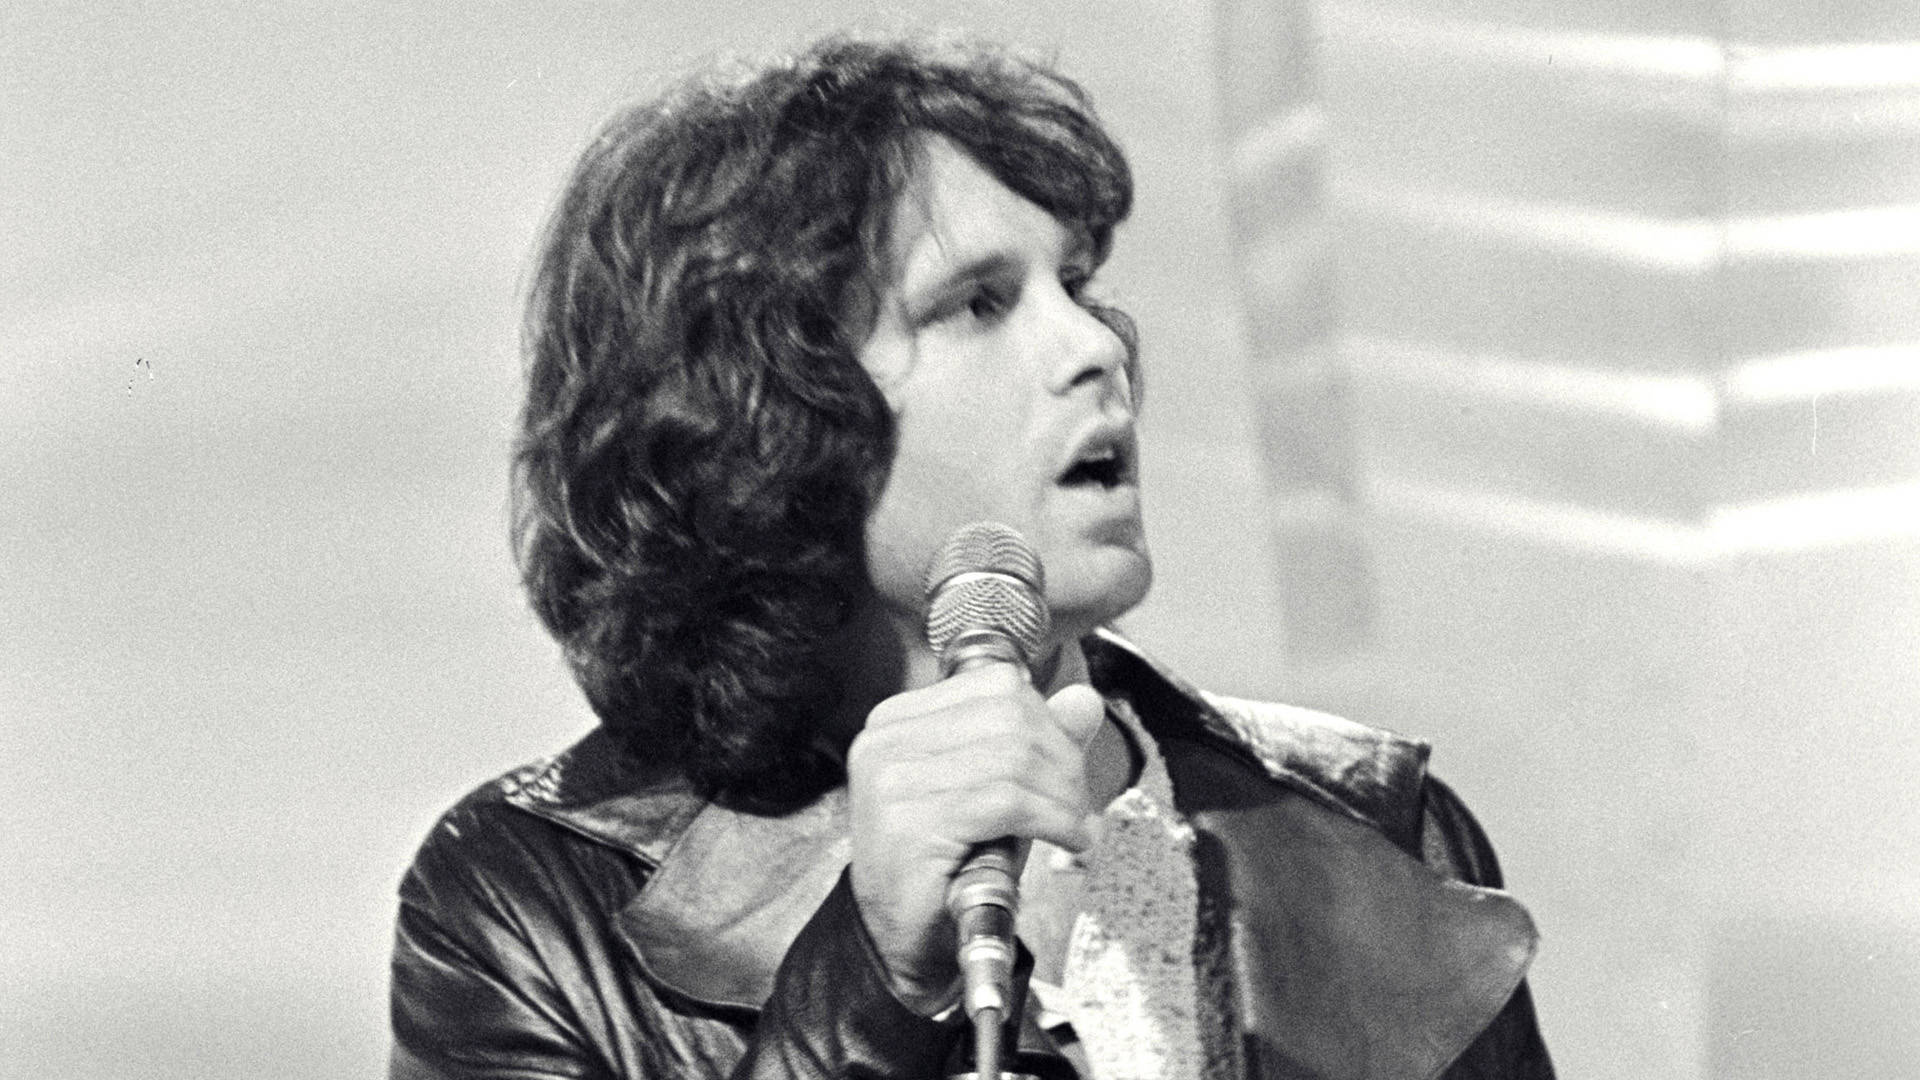 Jim Morrison Show